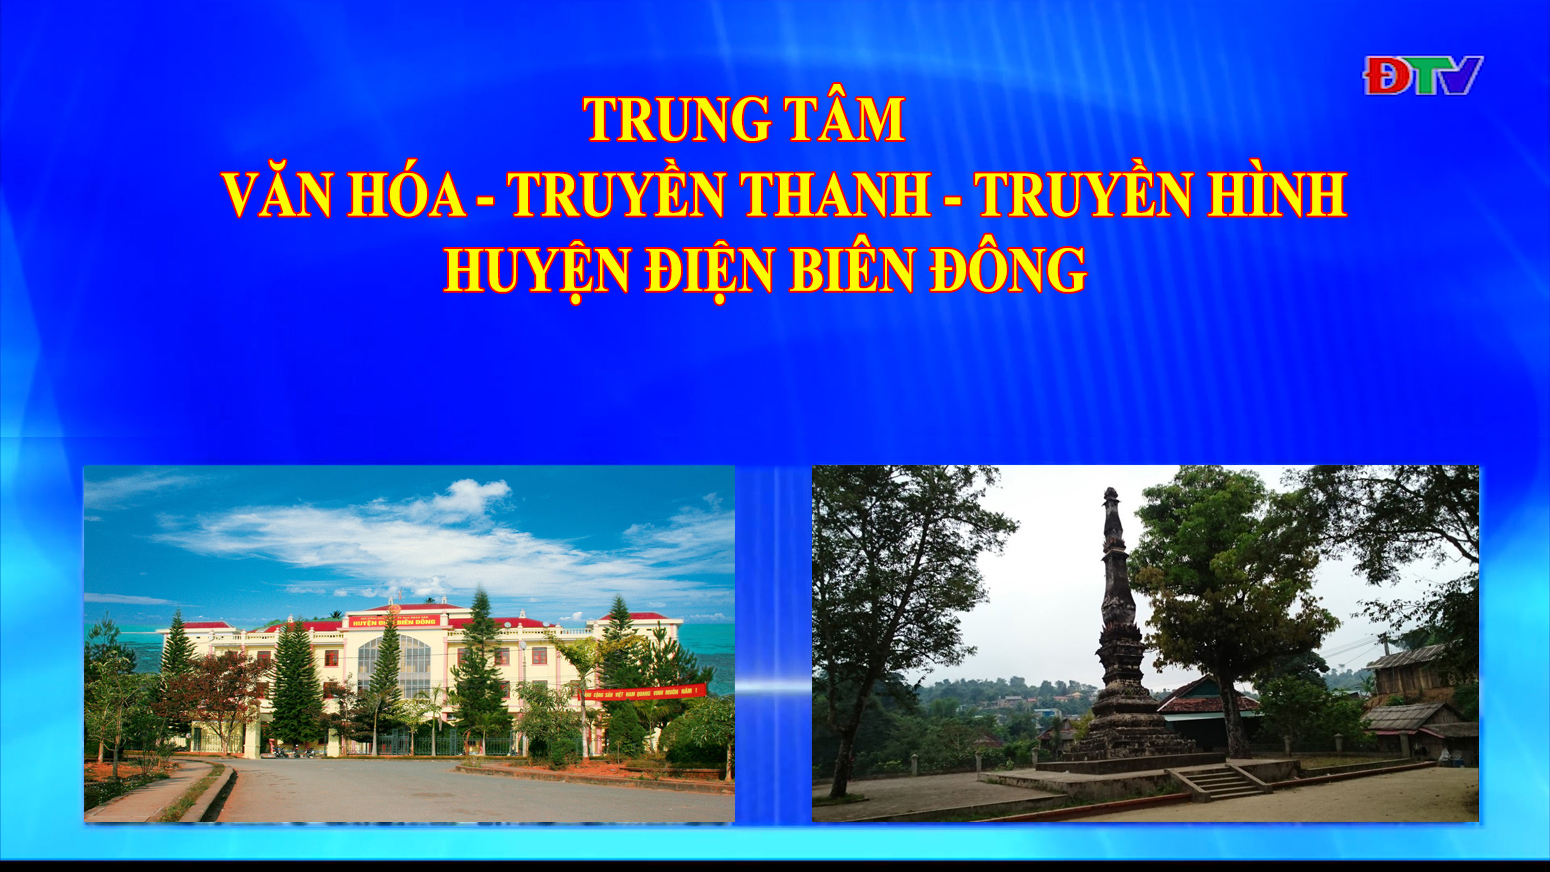 Trung tâm VH-TTTH huyện Điện Biên Đông (Ngày 31-7-2021)